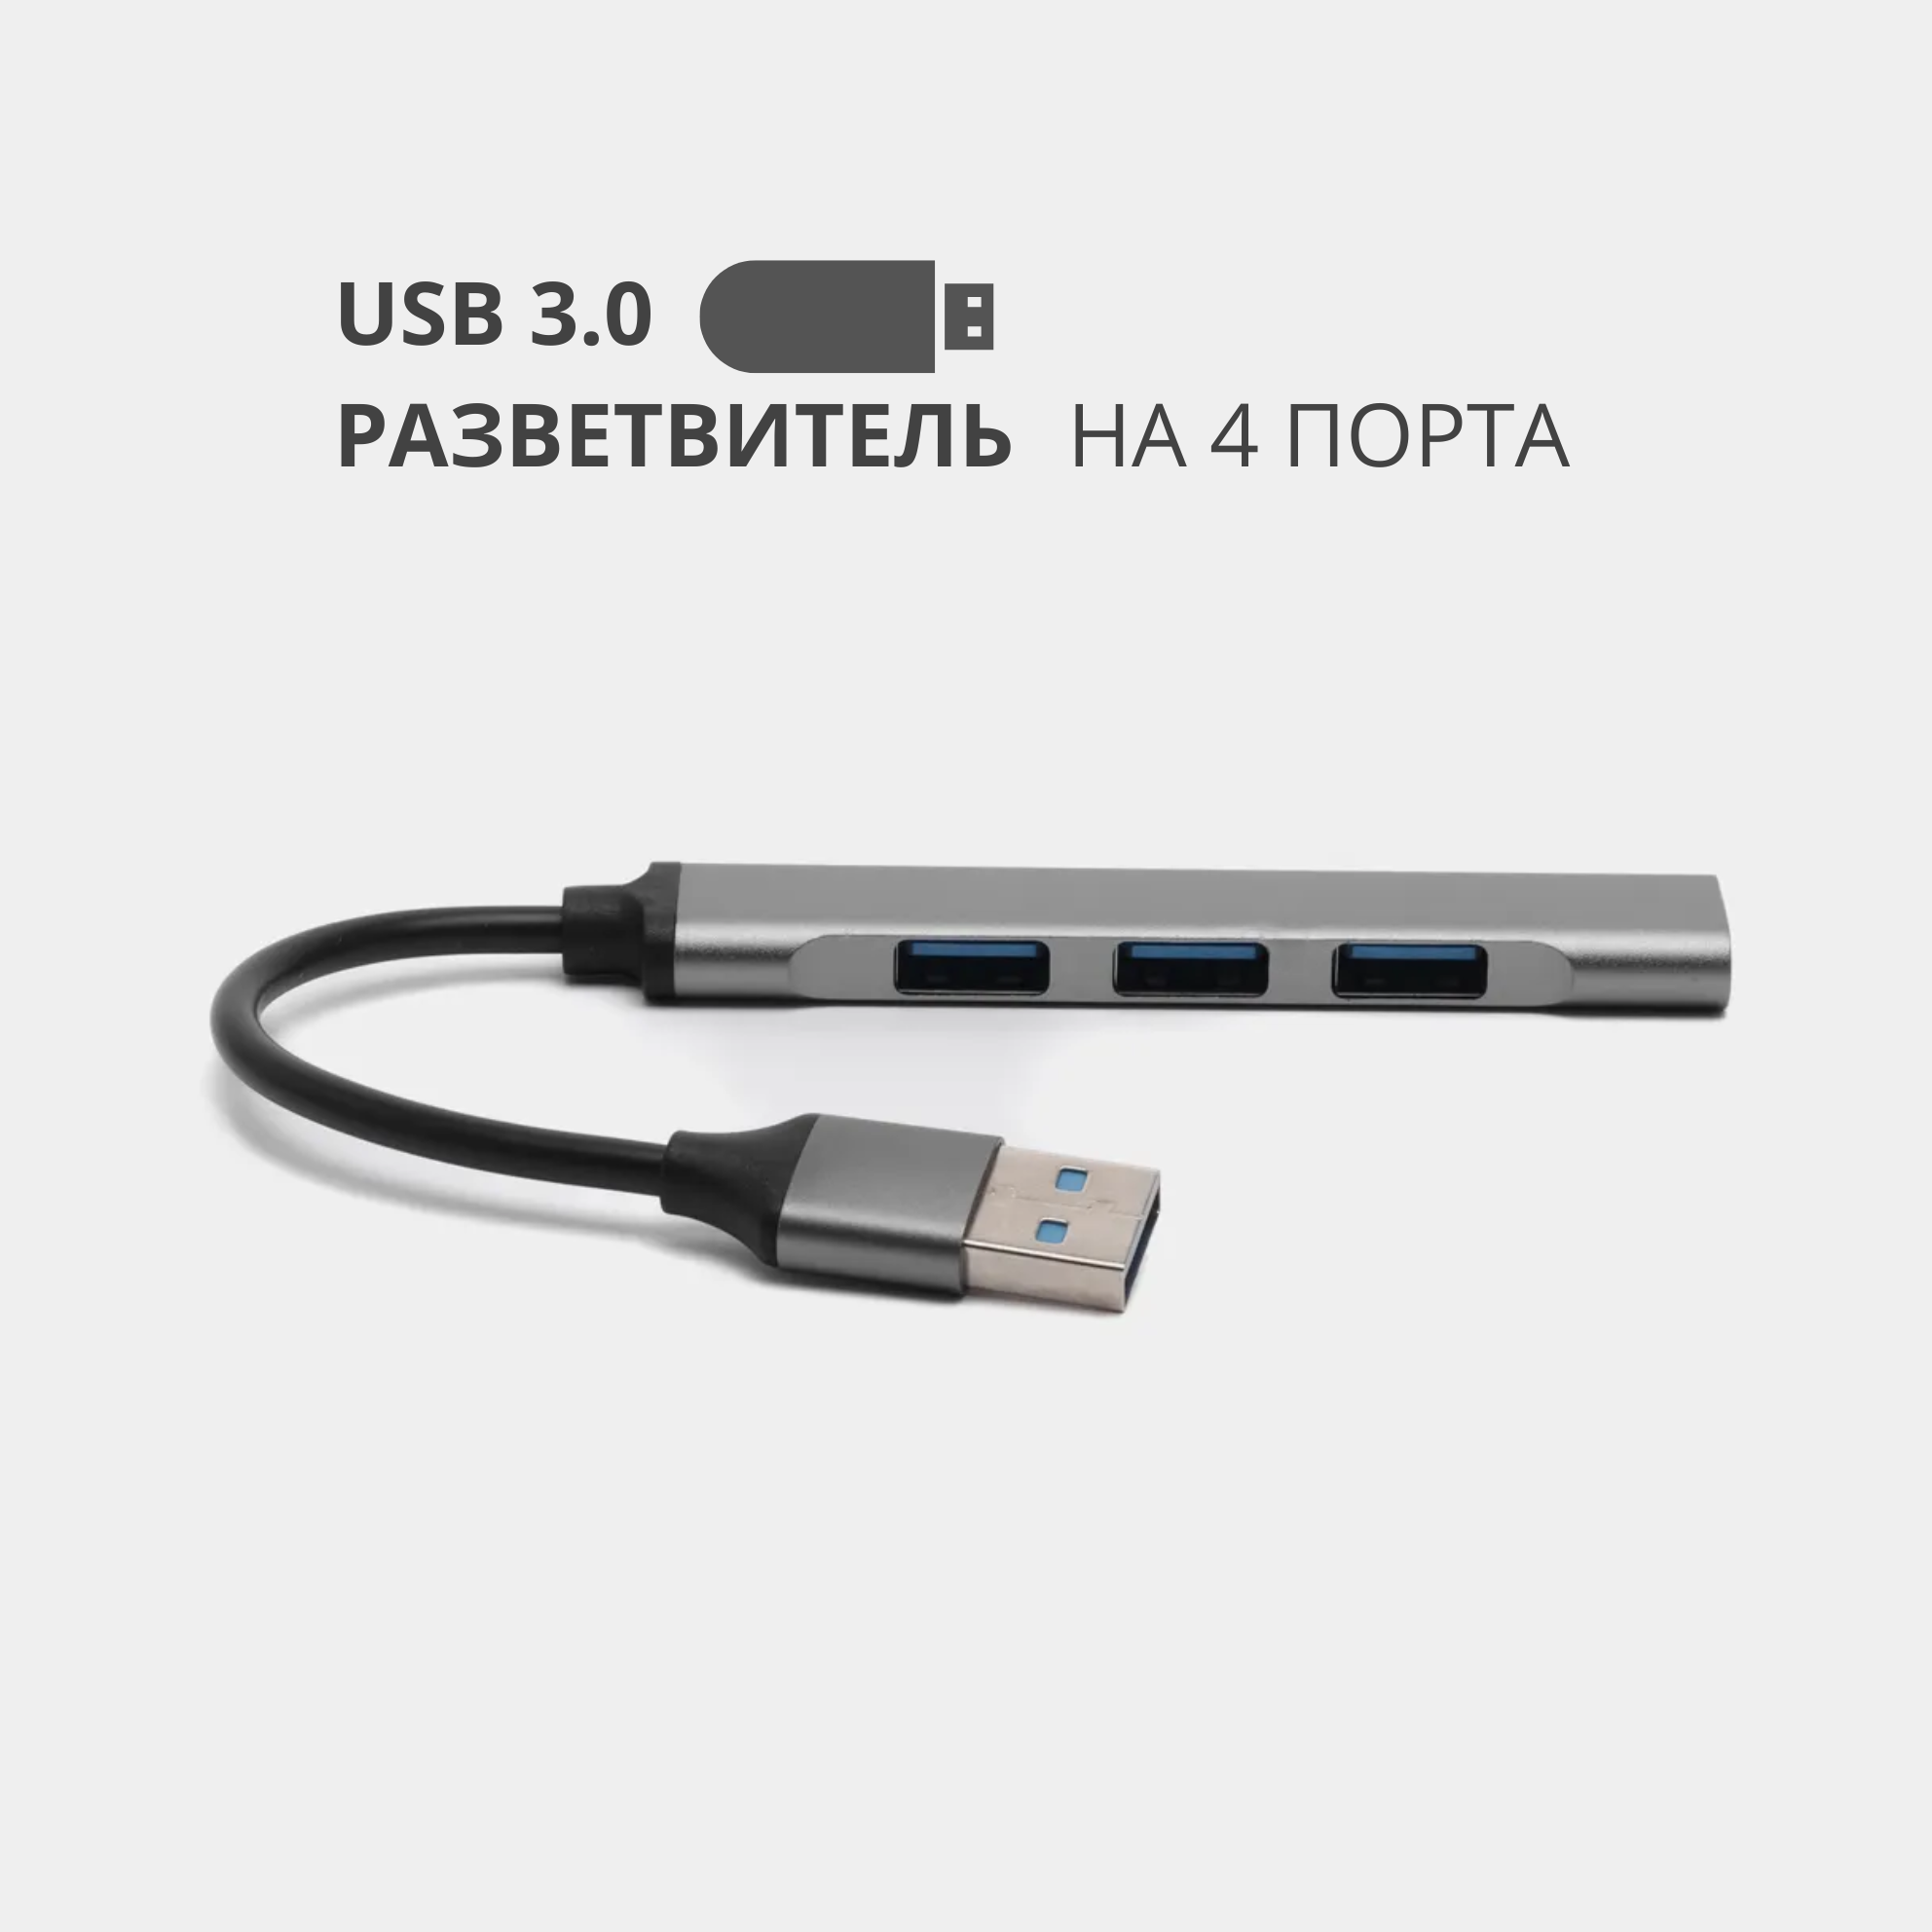 USB 3.0 - хаб, разветвитель на 4 порта, переходник HUB 3.0 концентратор